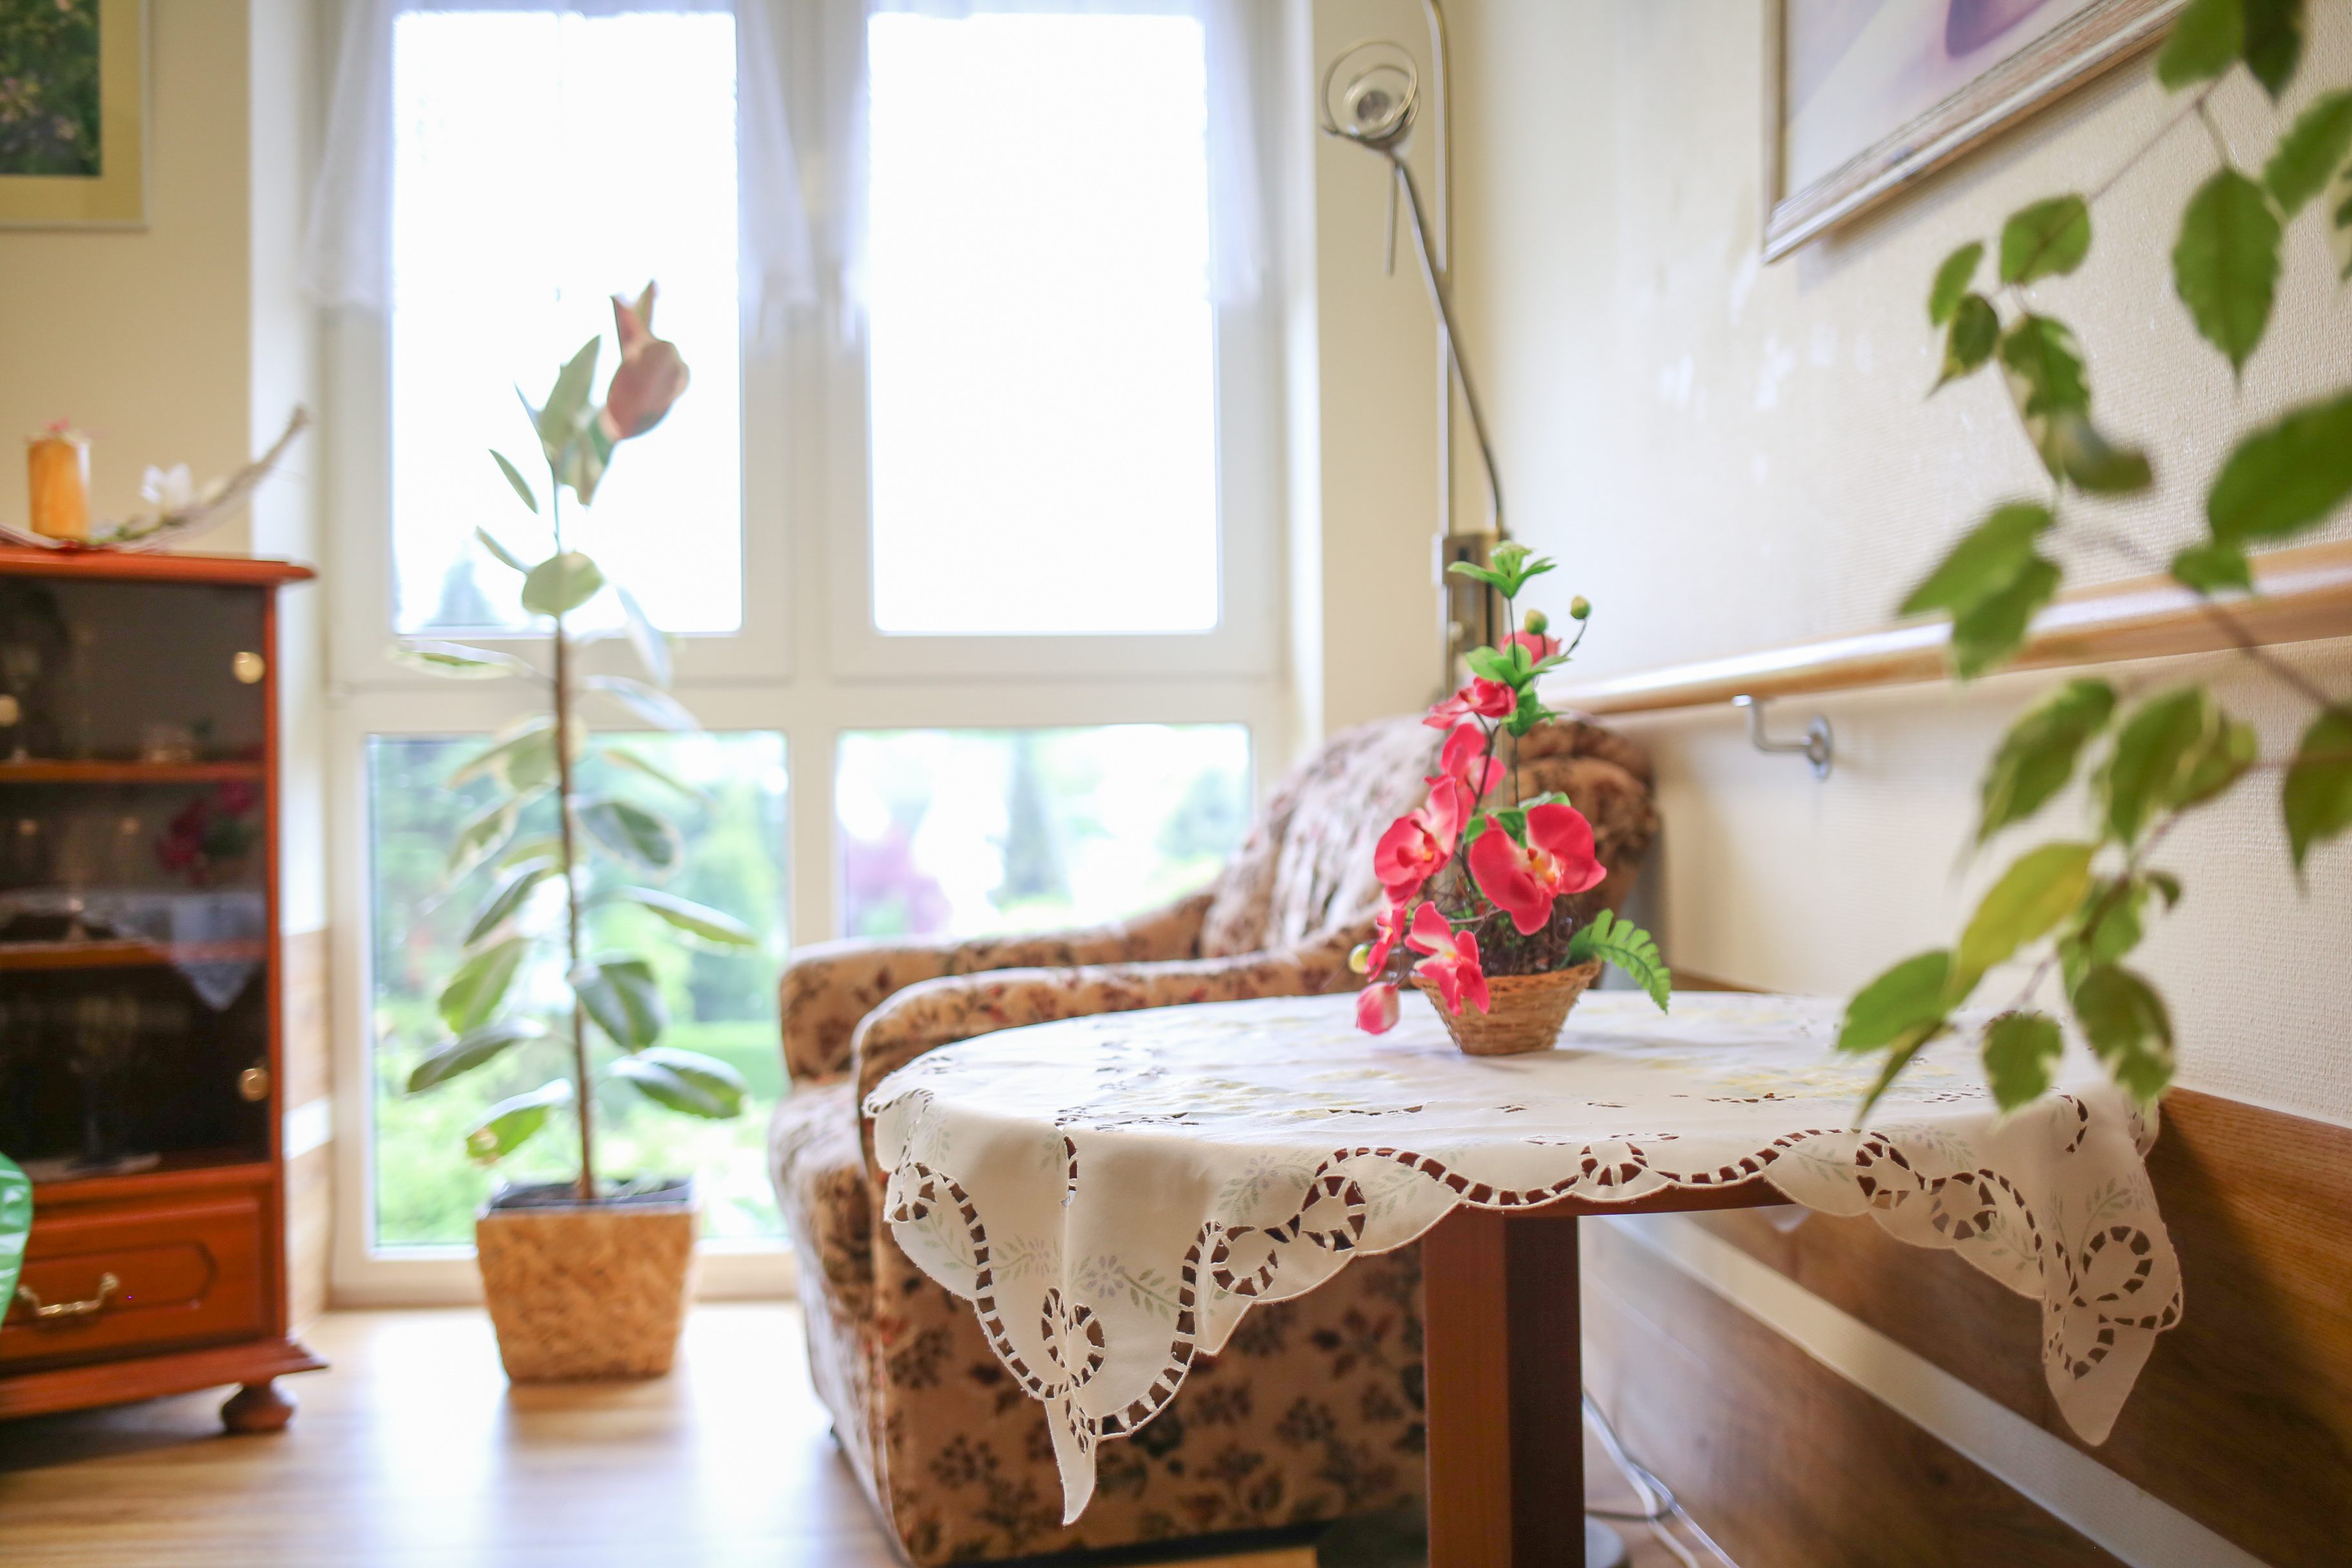 Ein Tisch mit Blume darauf in einem hellen Raum, im Hintergrund ein großes Fenster mit Grünpflanze davor